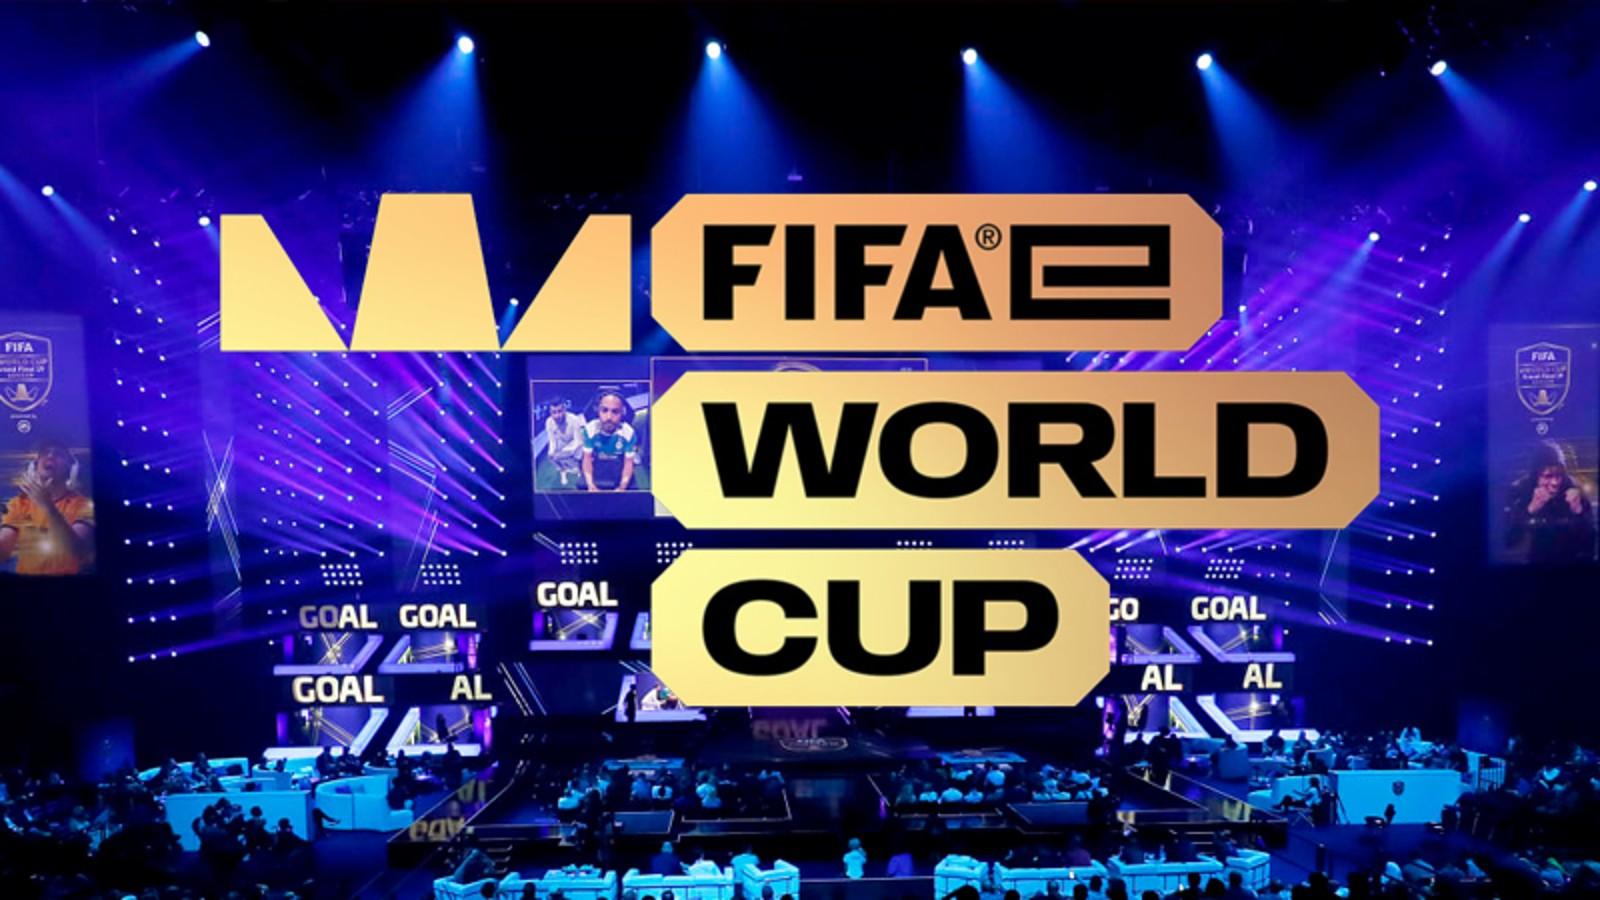 FIFA e World Cup graphic